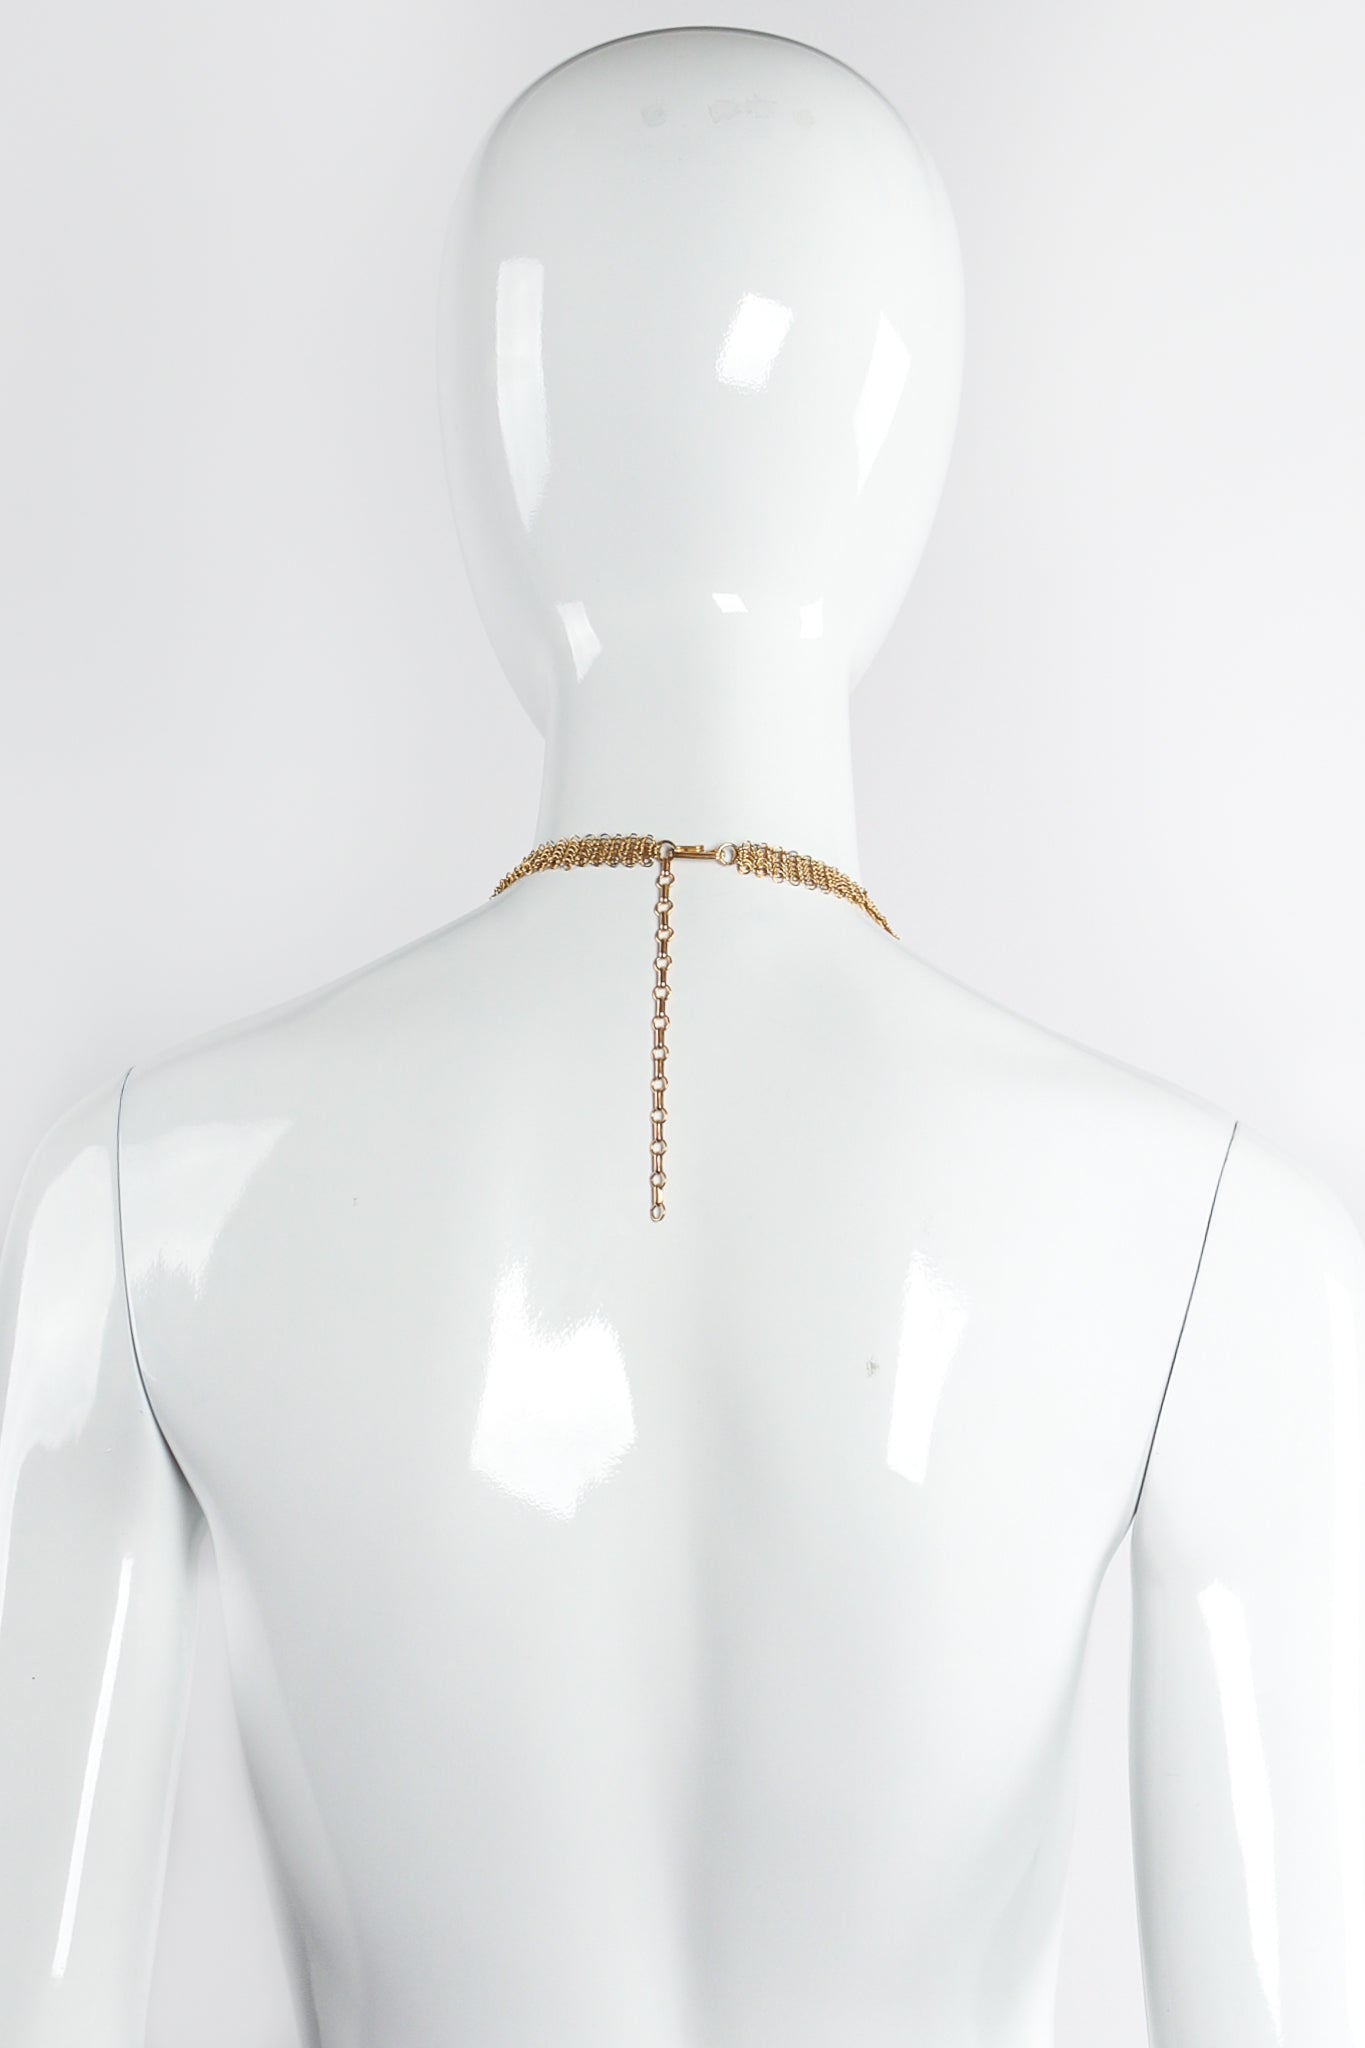 Vintage Anthony Ferrara Ring Mesh Hammered Dome Swarovski Necklace on Mannequin Back at Recess LA